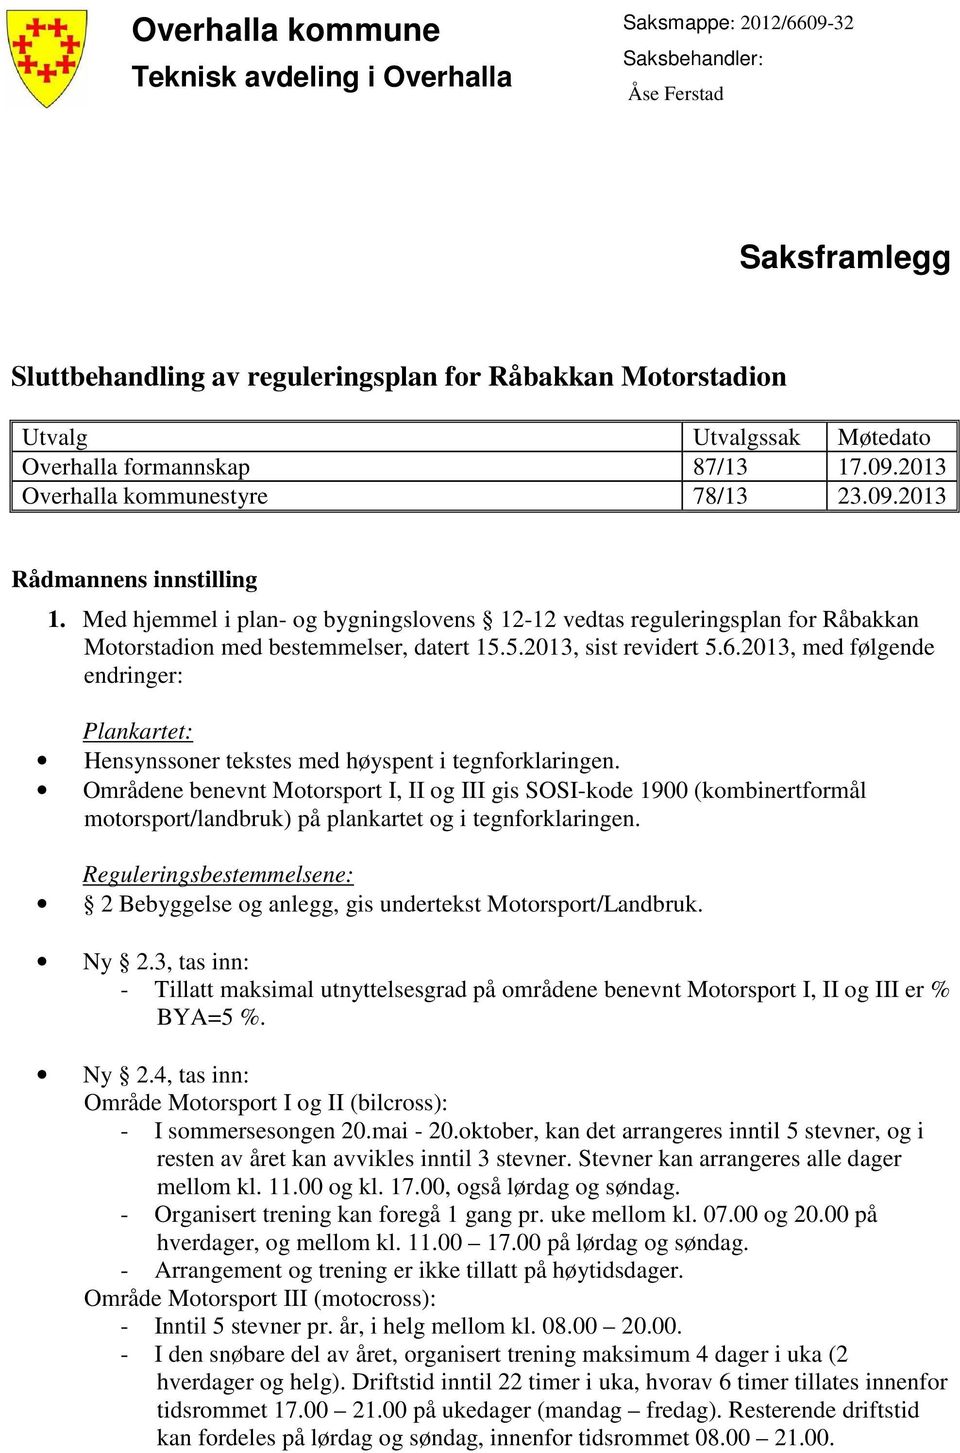 Med hjemmel i plan- og bygningslovens 12-12 vedtas reguleringsplan for Råbakkan Motorstadion med bestemmelser, datert 15.5.2013, sist revidert 5.6.